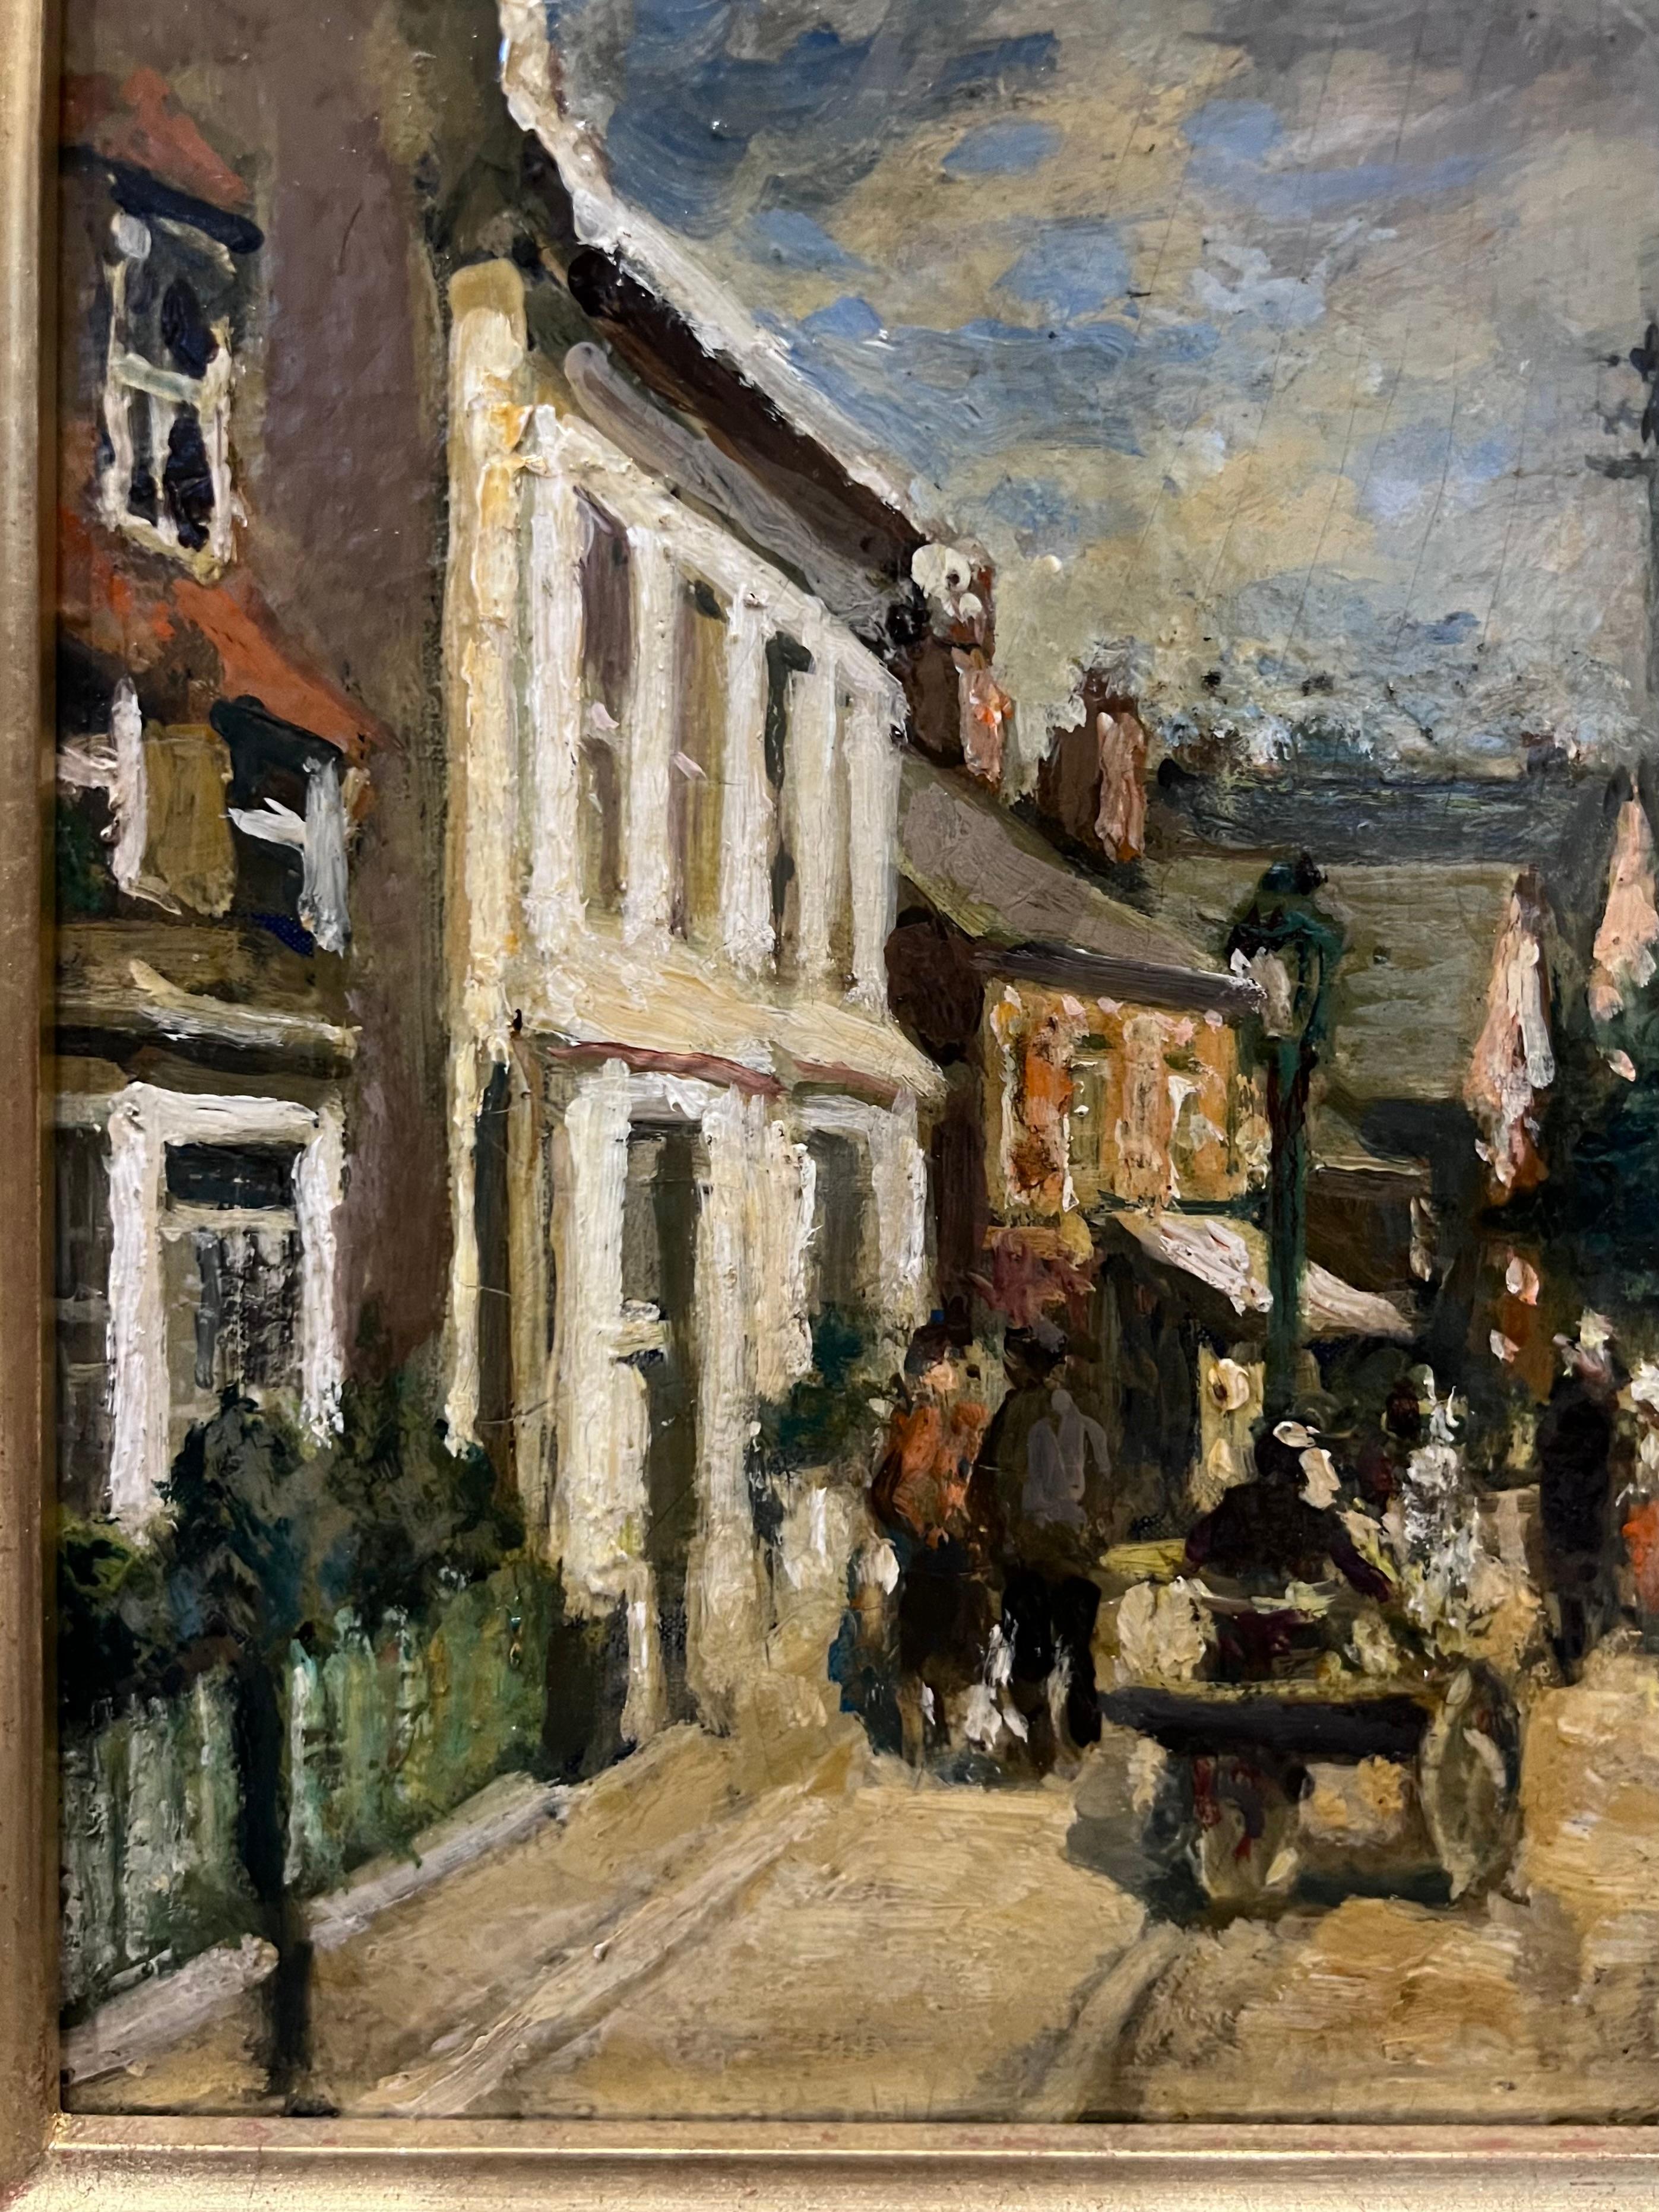 Rue de village en Angleterre - Barbizon School Painting by Jacques Emile Blanche